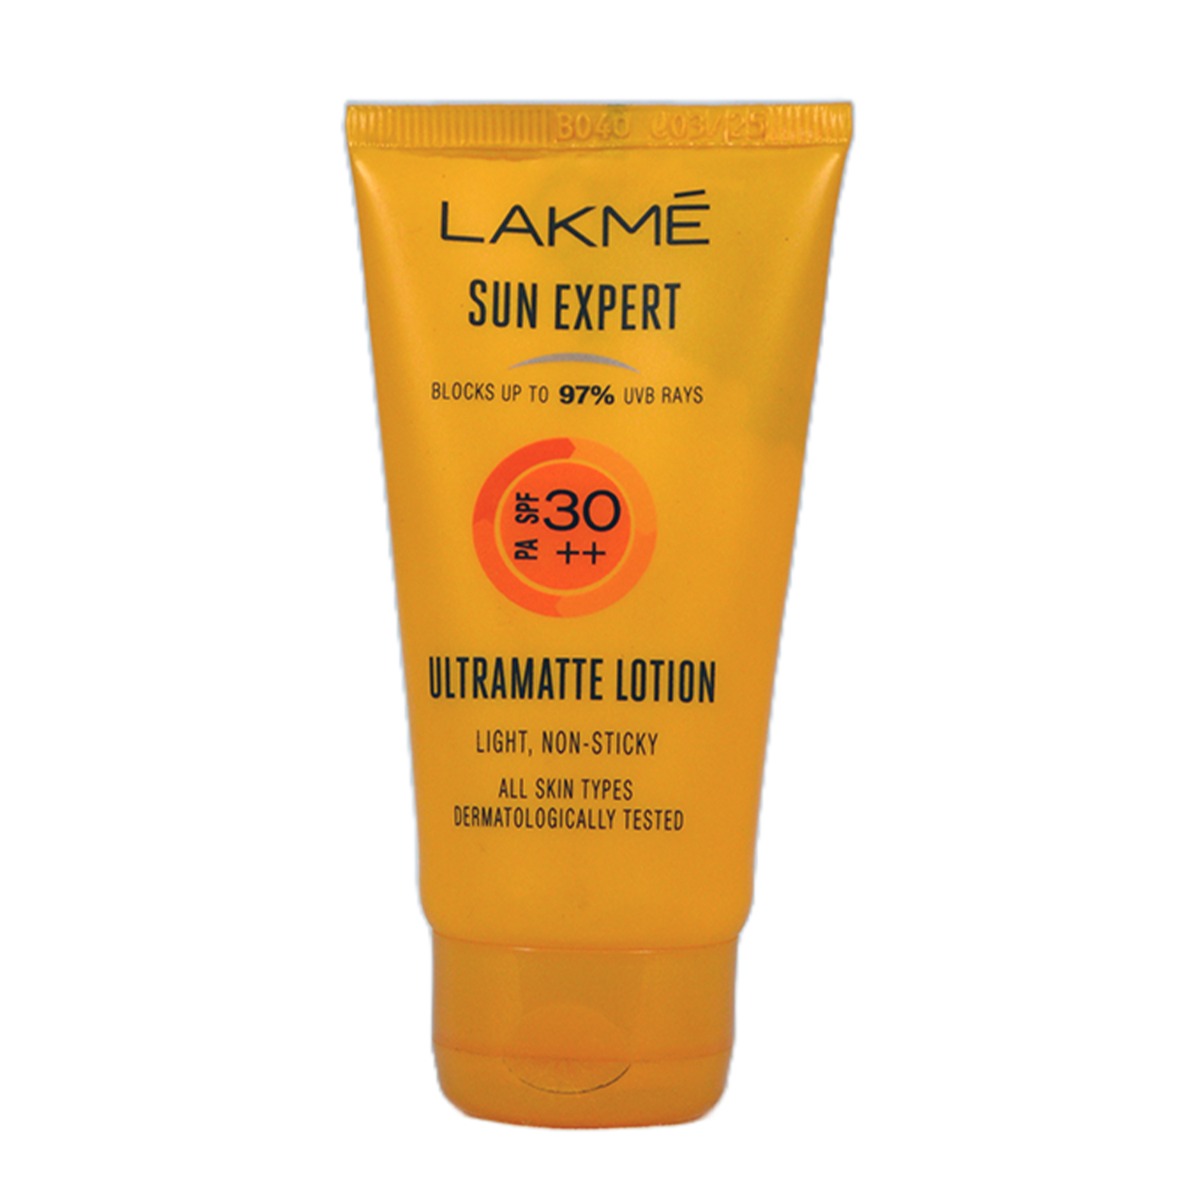 Lakmé Sun Expert SPF 30 PA+++ Ultra Matte Lotion Sunscreen, 50ml